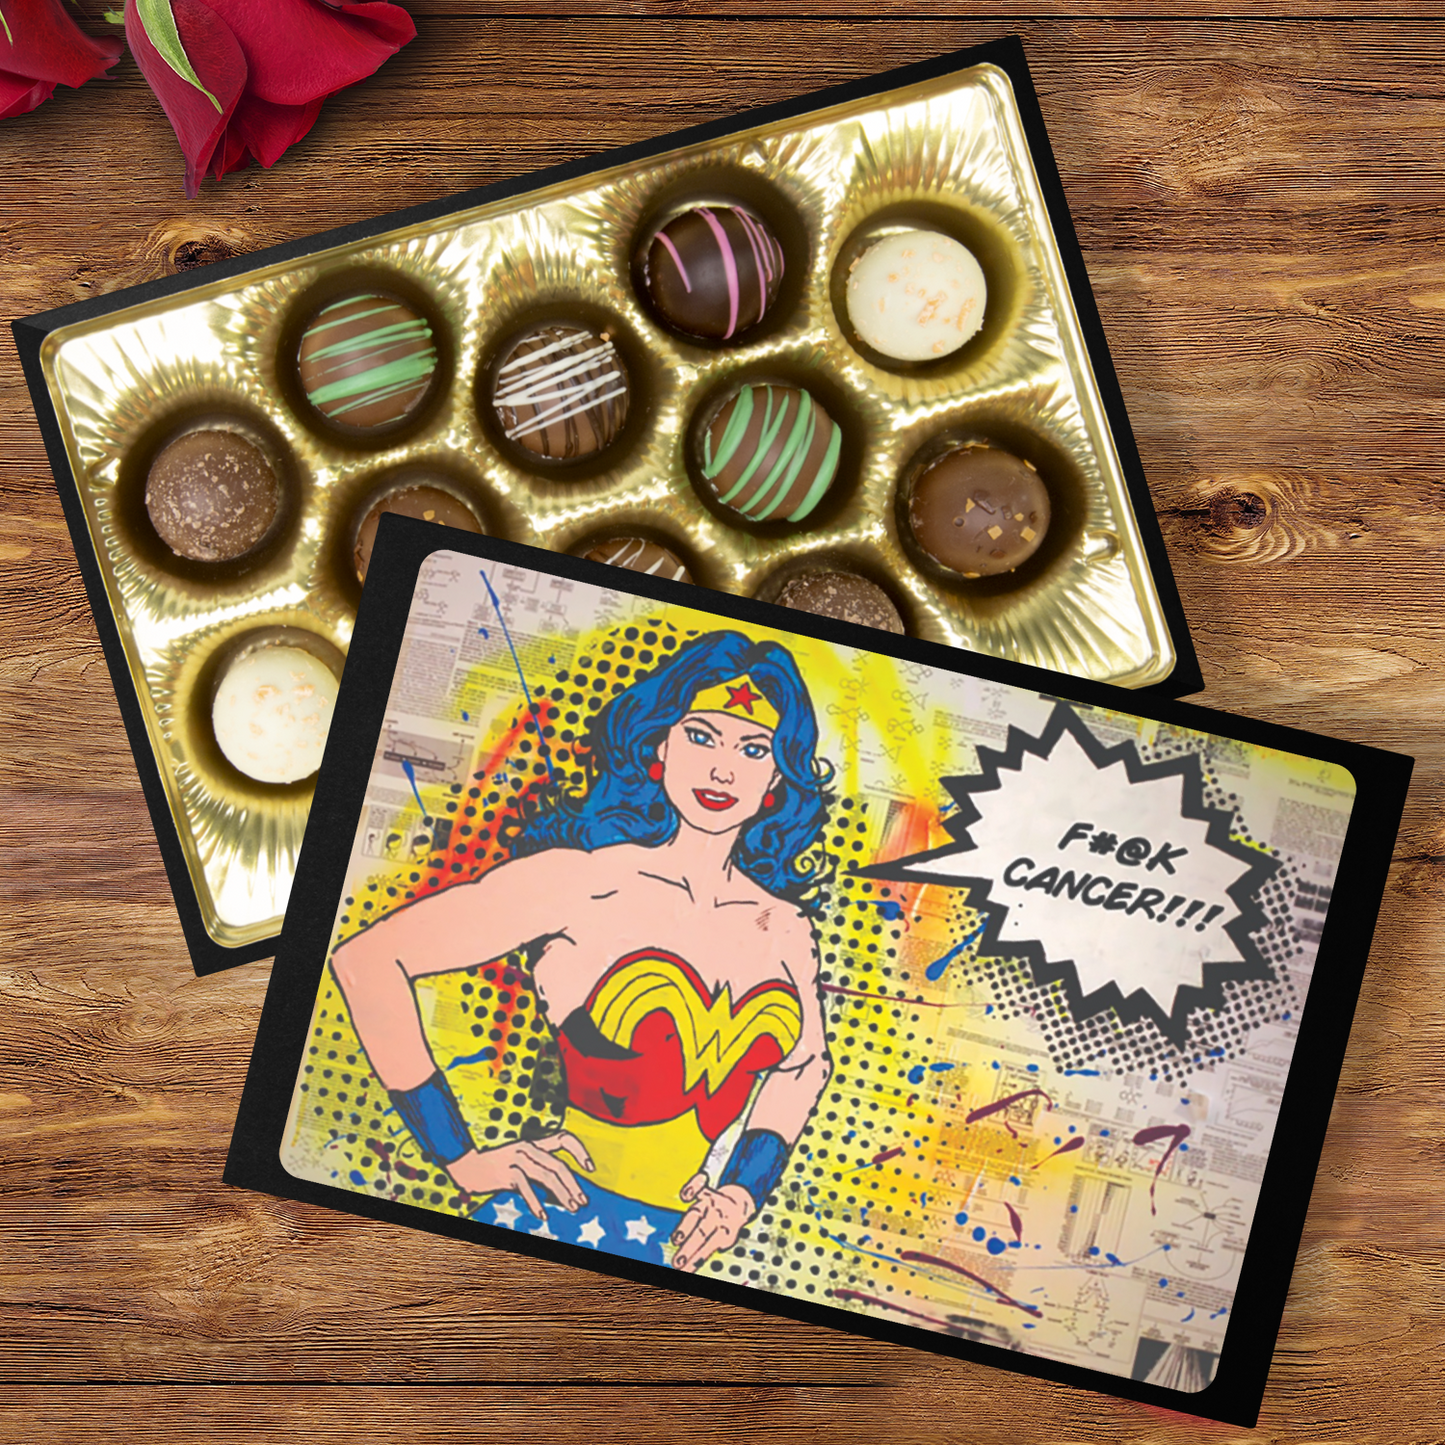 Handmade Chocolate Truffles with "Empowered" Box